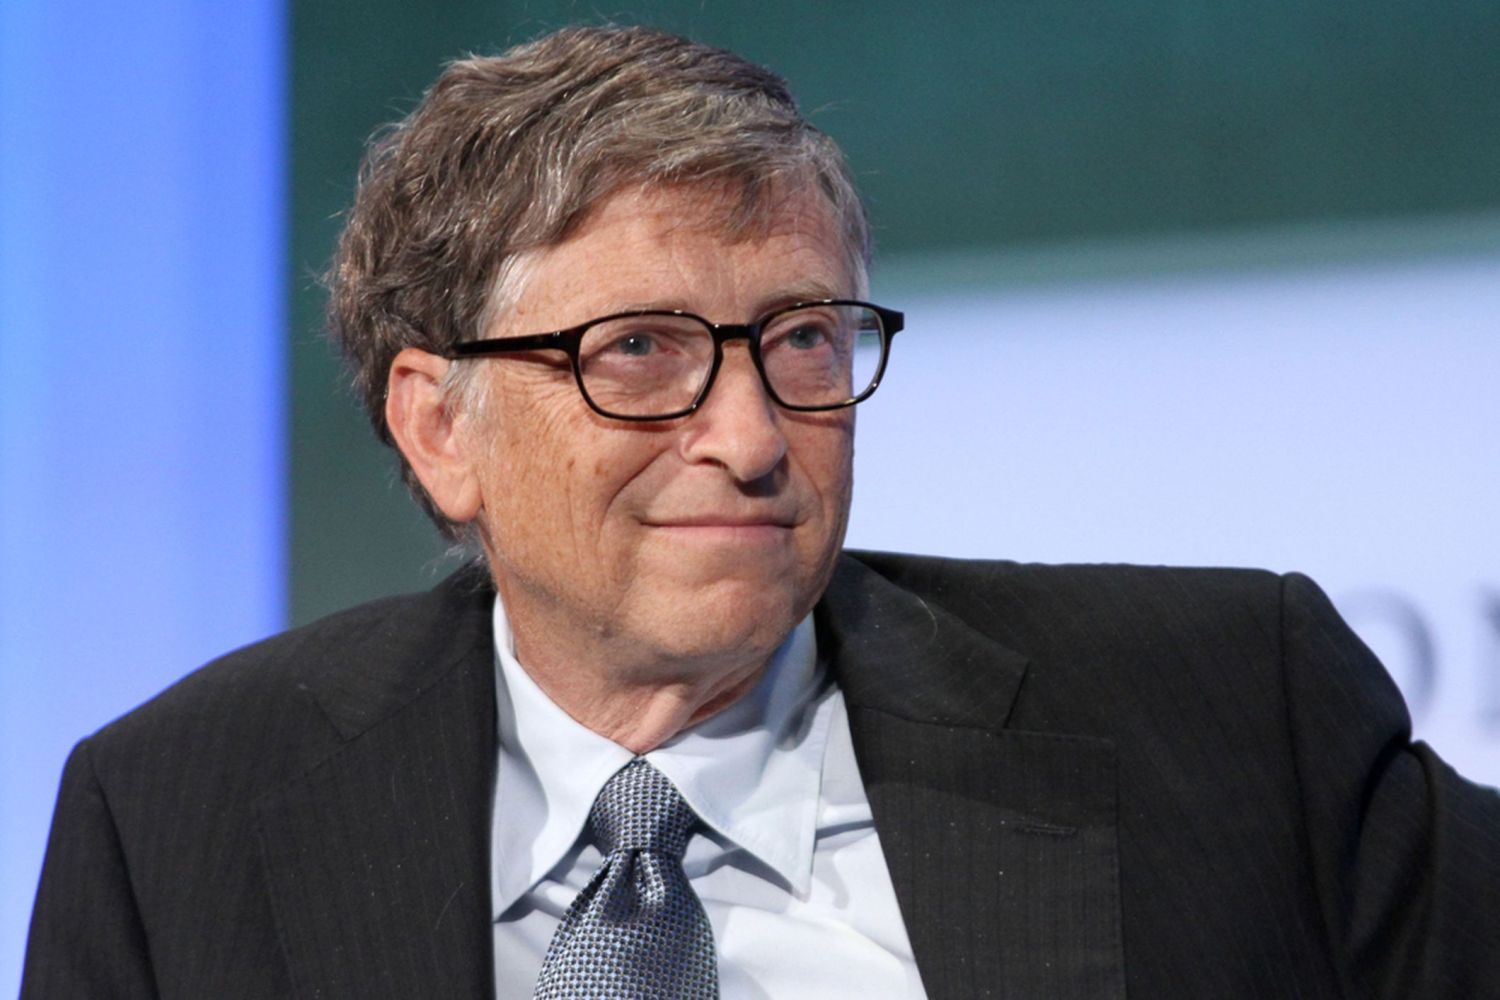 Organizaciones benéficas de Bill Gates para abordar la pobreza y la salud